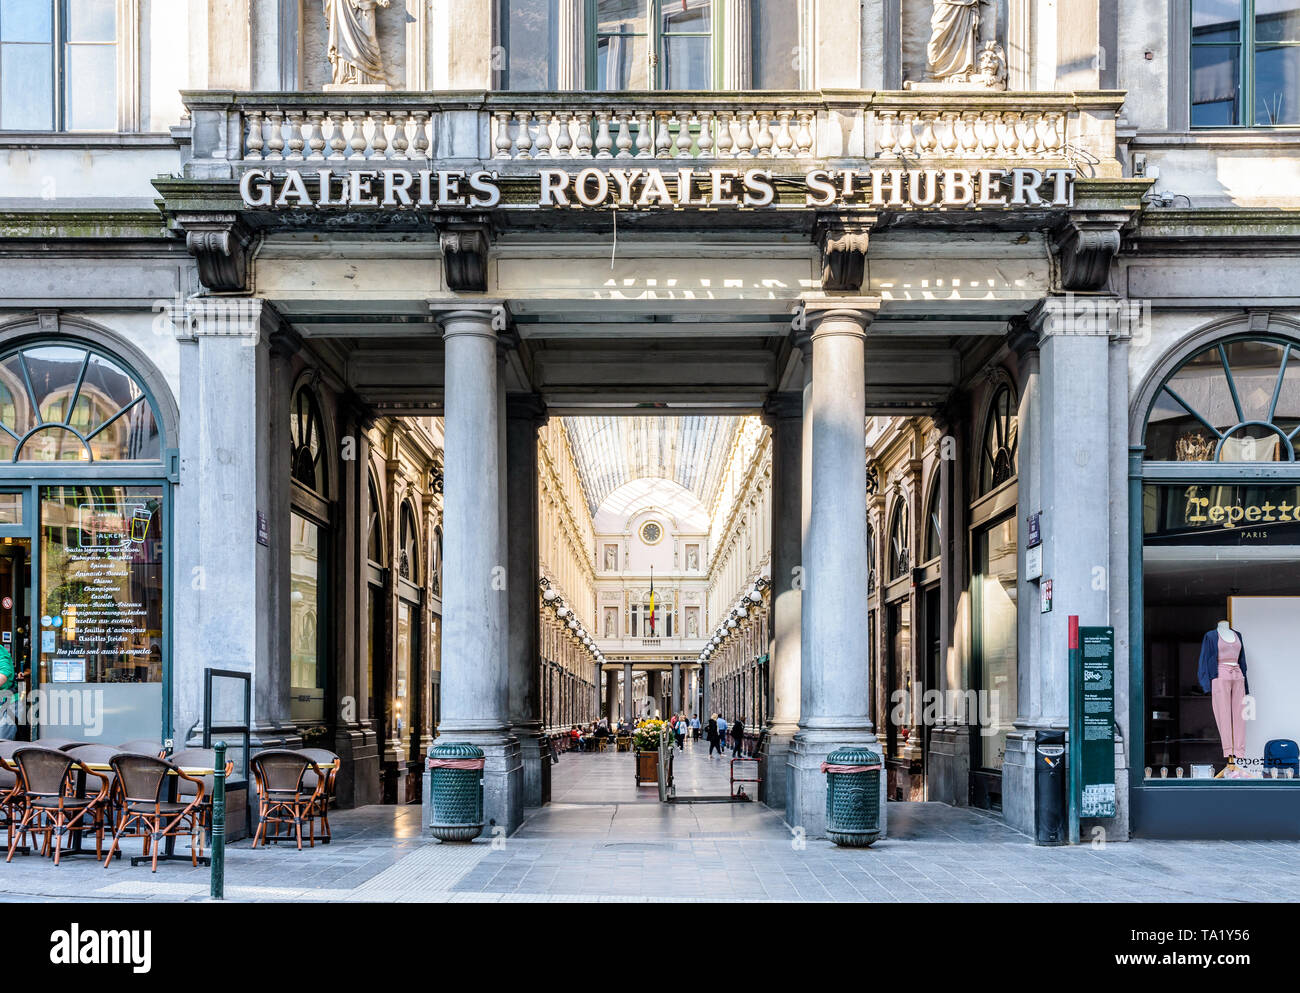 Vorderansicht der Eingang der Galerie der Königin, die nördliche Hälfte der königlichen Saint-Hubert-Galerien Brüssel, Belgien. Stockfoto